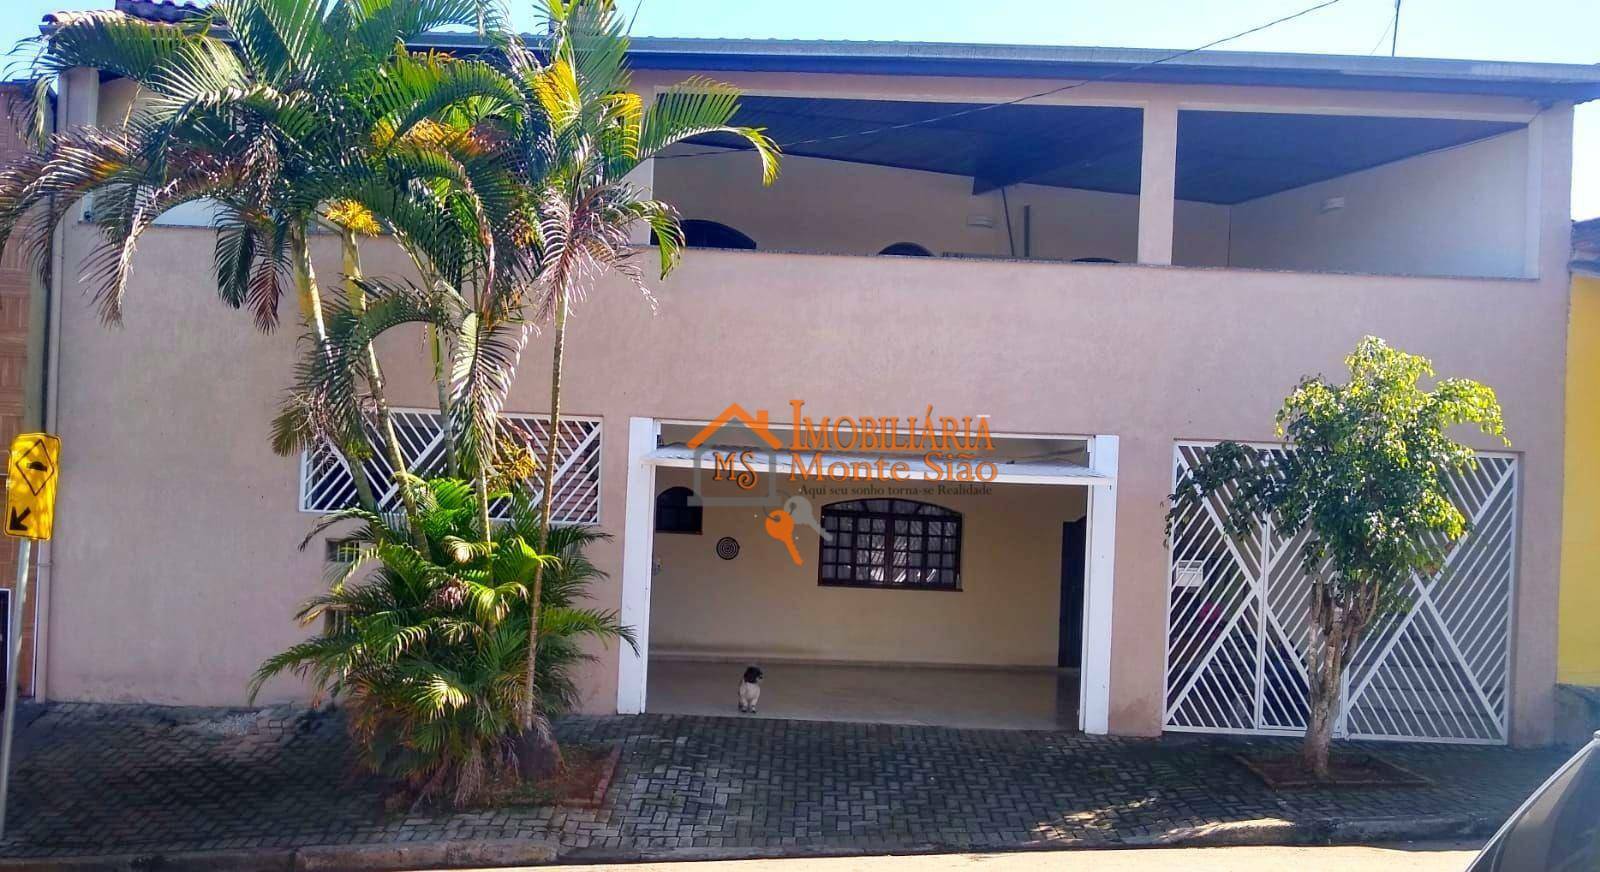 Sobrado com 3 dormitórios à venda, 250 m² por R$ 660.000,00 - Jardim Bananal - Guarulhos/SP